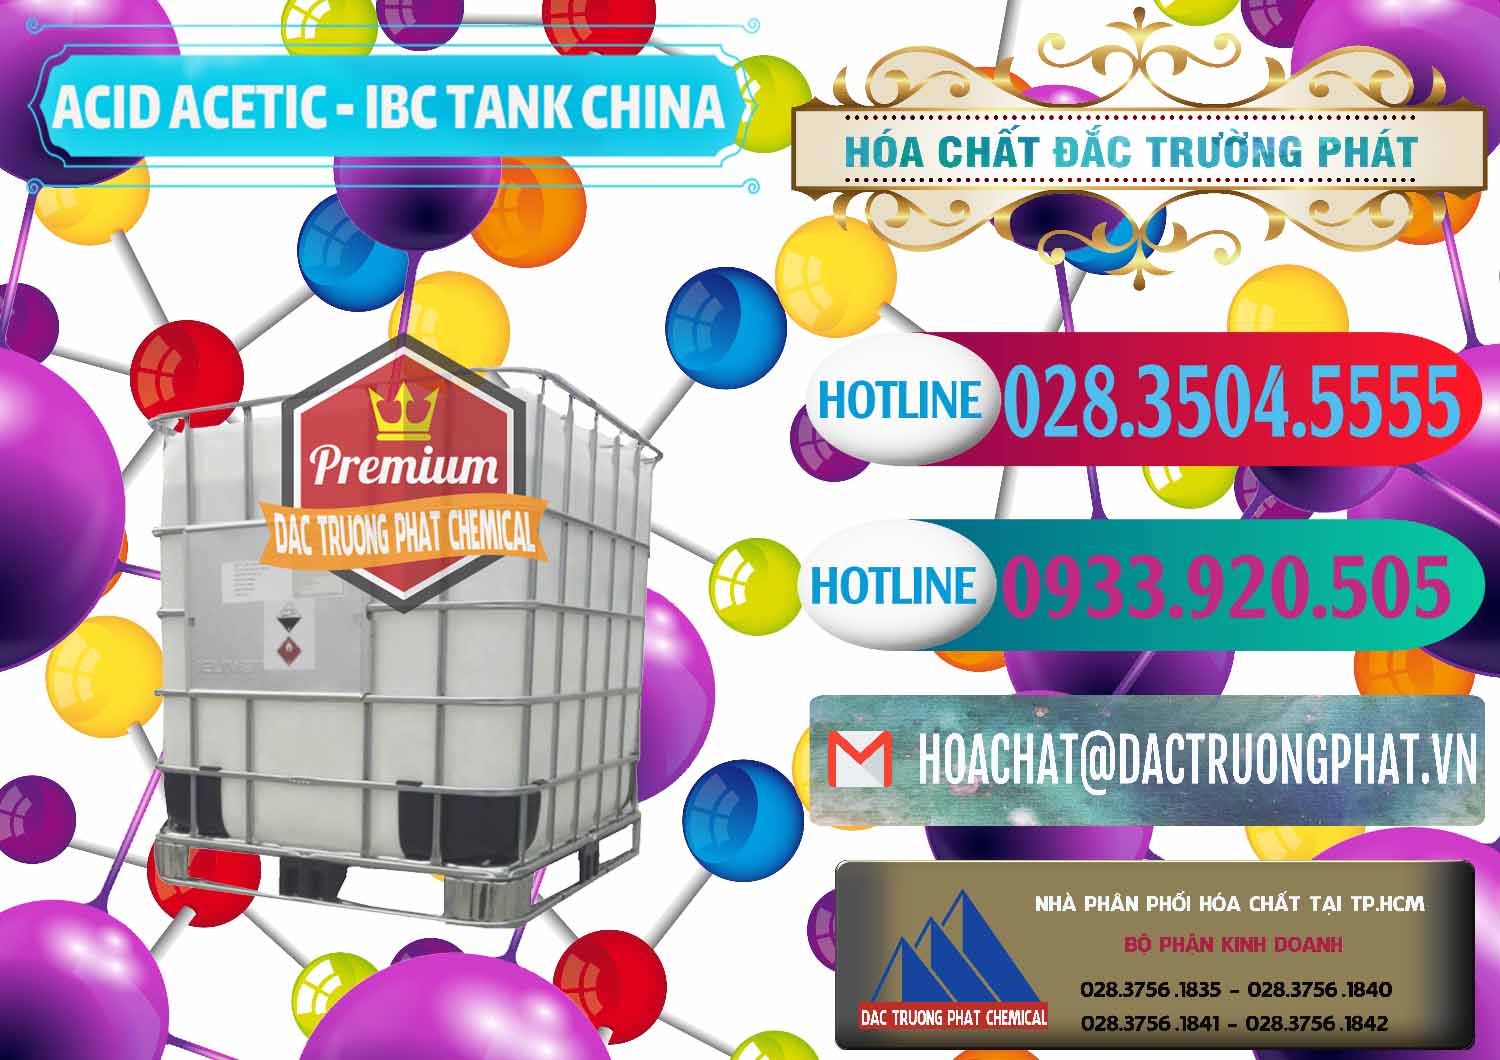 Cty chuyên phân phối & bán Acetic Acid – Axit Acetic Tank Bồn IBC Trung Quốc China - 0443 - Phân phối ( cung ứng ) hóa chất tại TP.HCM - truongphat.vn